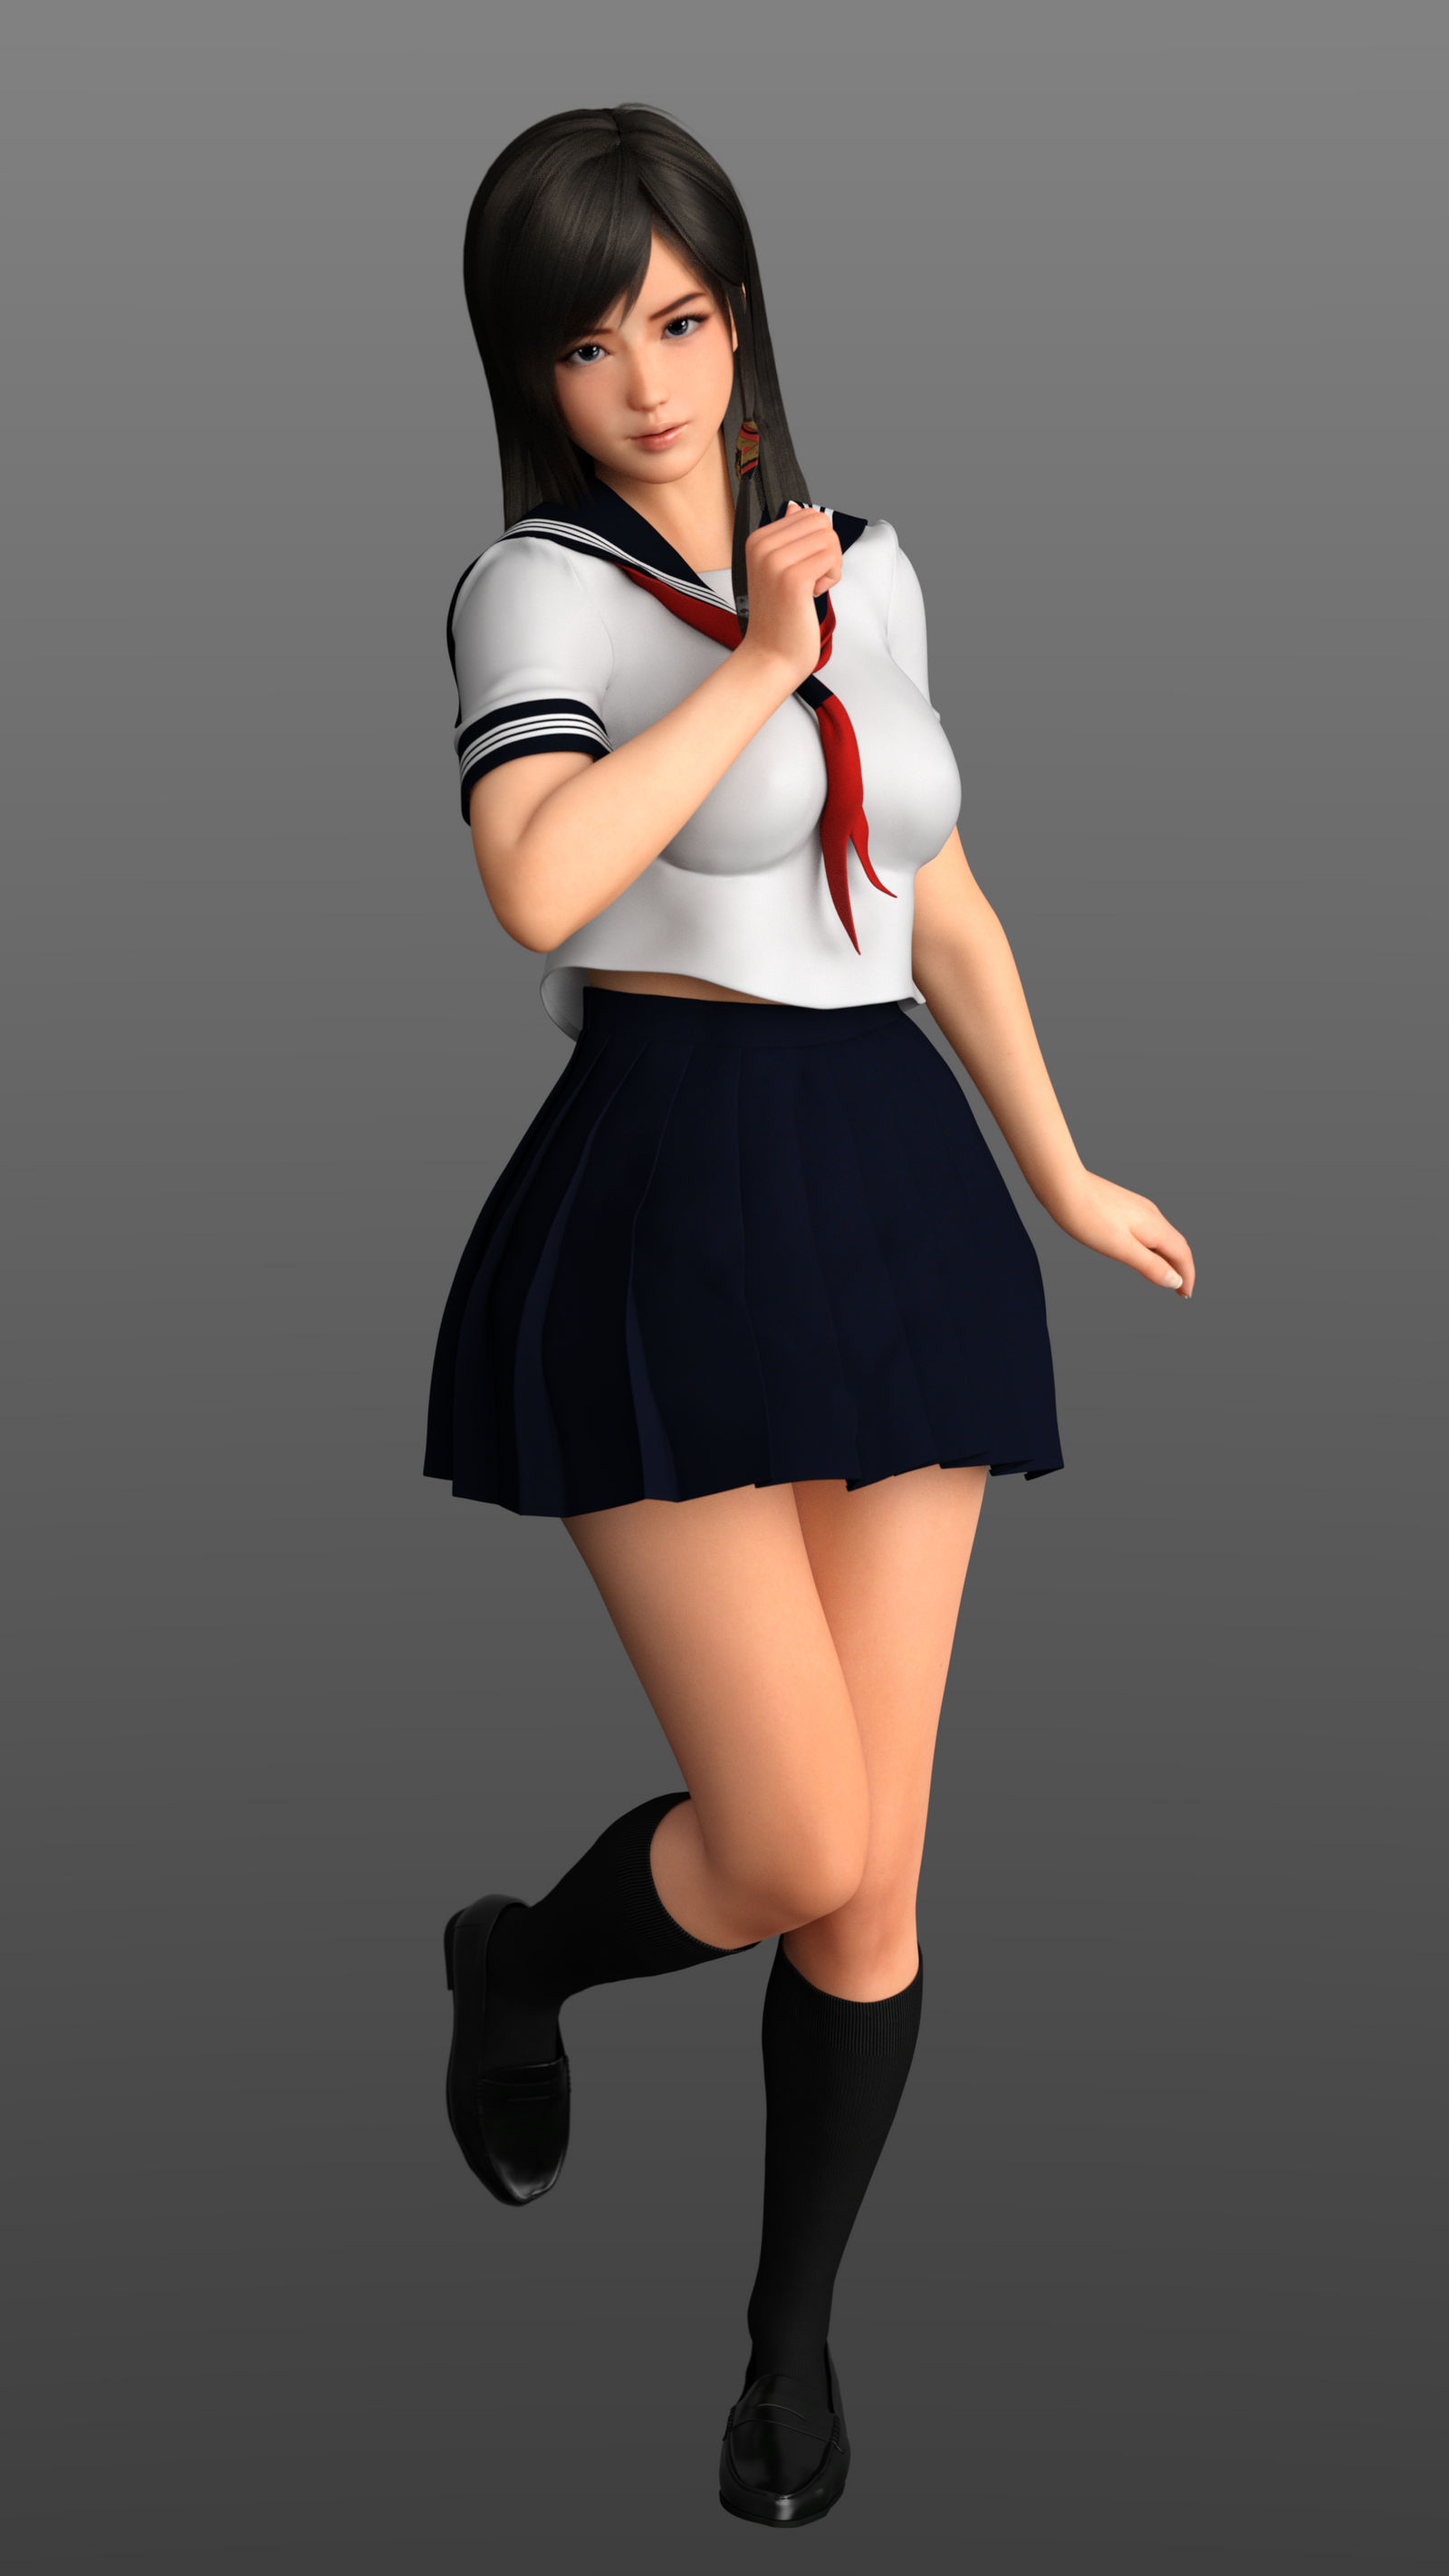 Kokoro Schoolgirl Series By Necriseye On Deviantart 